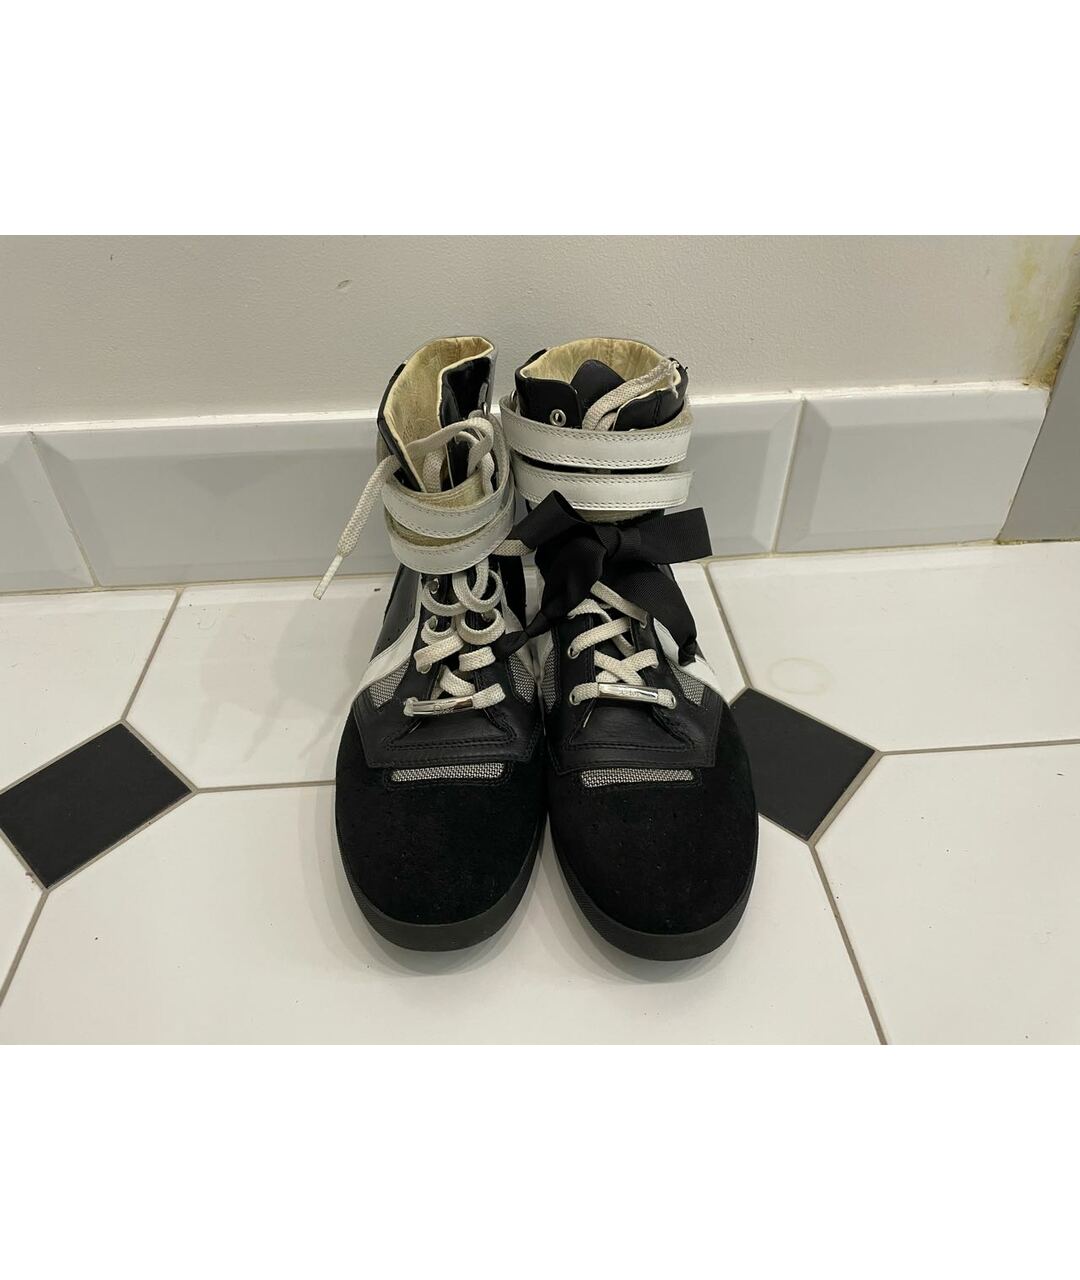 CHRISTIAN DIOR PRE-OWNED Черные кожаные кроссовки, фото 2